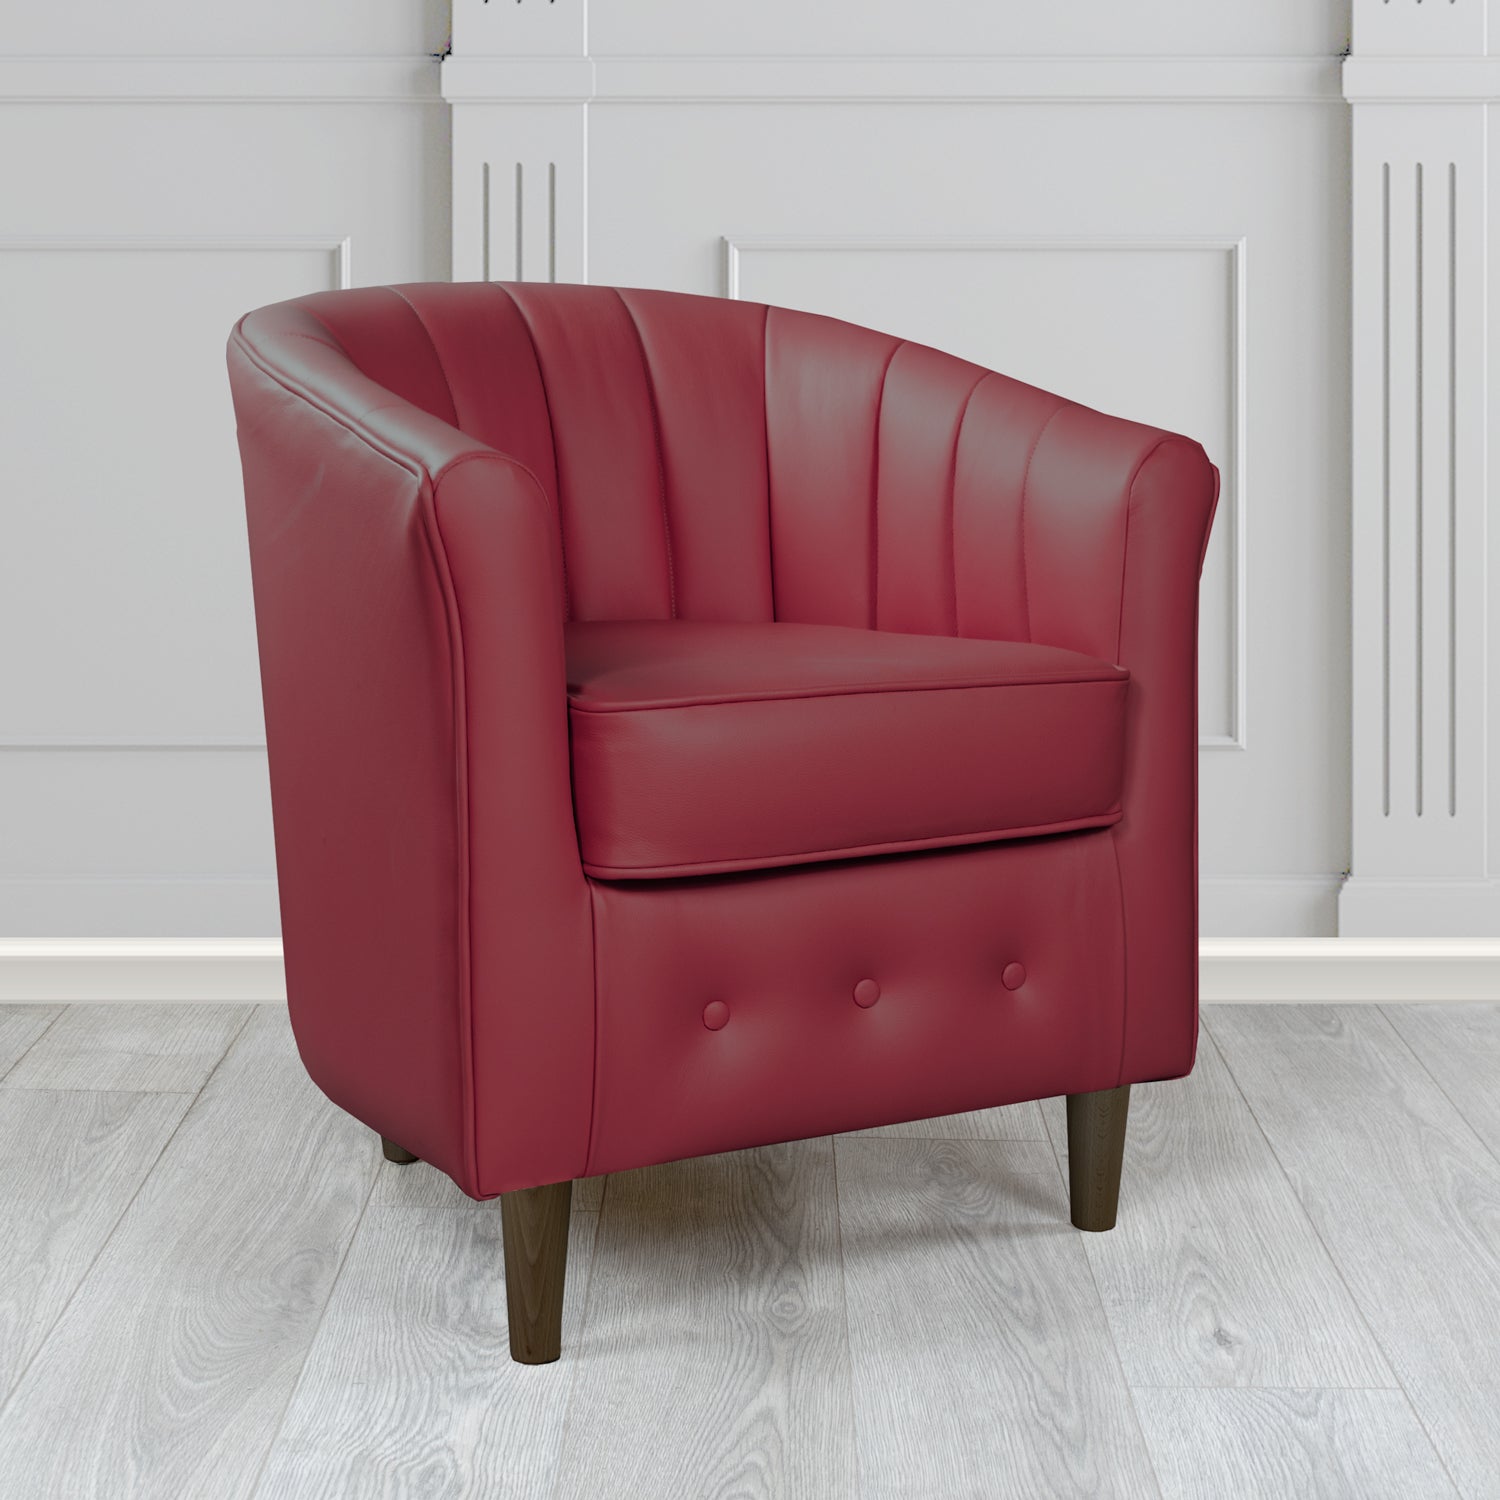 Doha Tub Chair in Vele Ruby Crib 5 Genuine Leather